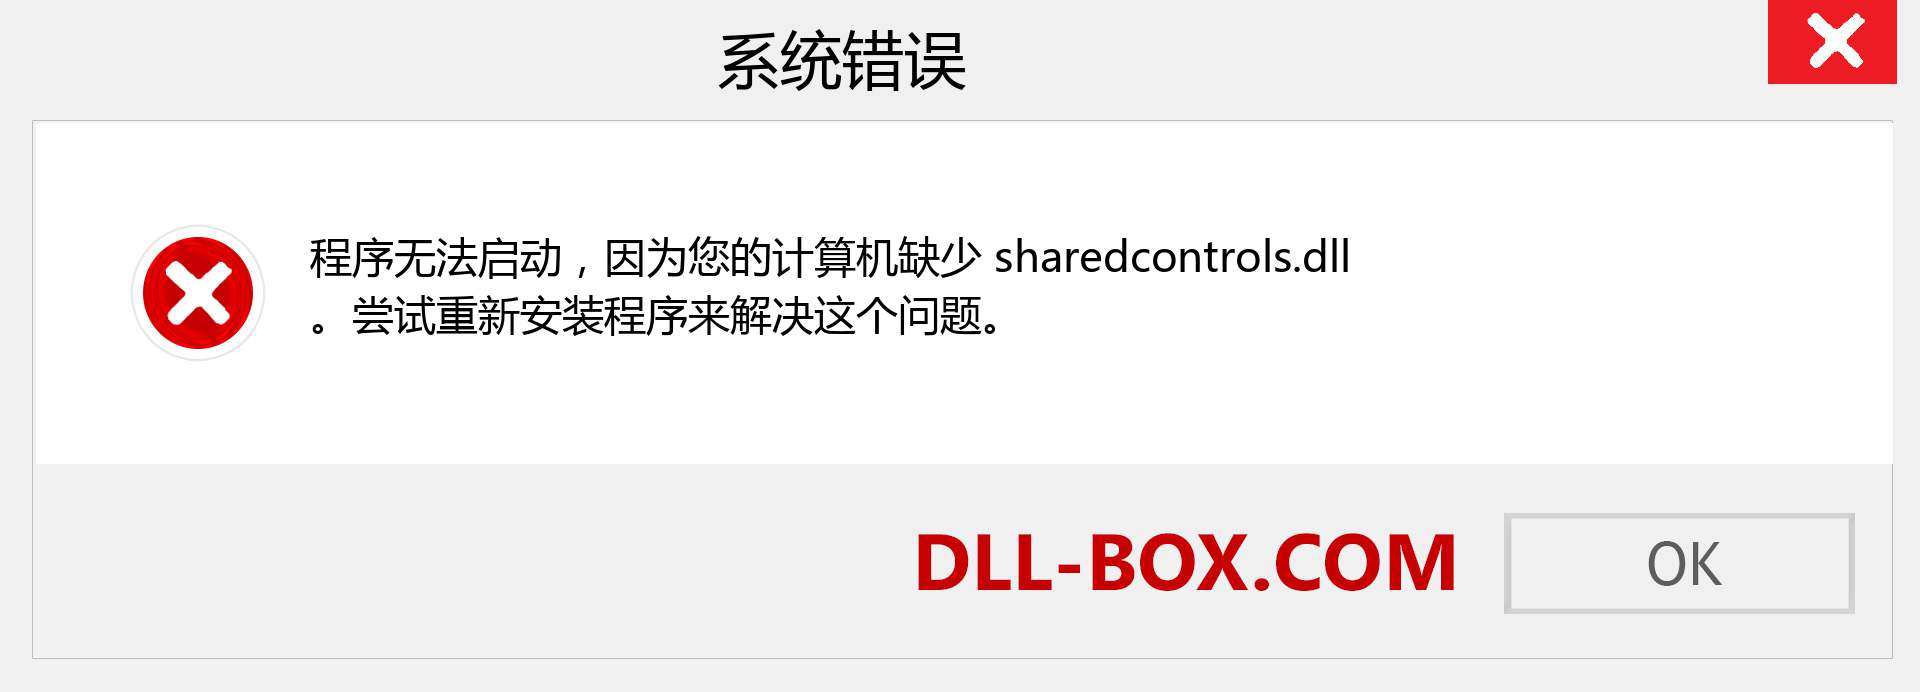 sharedcontrols.dll 文件丢失？。 适用于 Windows 7、8、10 的下载 - 修复 Windows、照片、图像上的 sharedcontrols dll 丢失错误